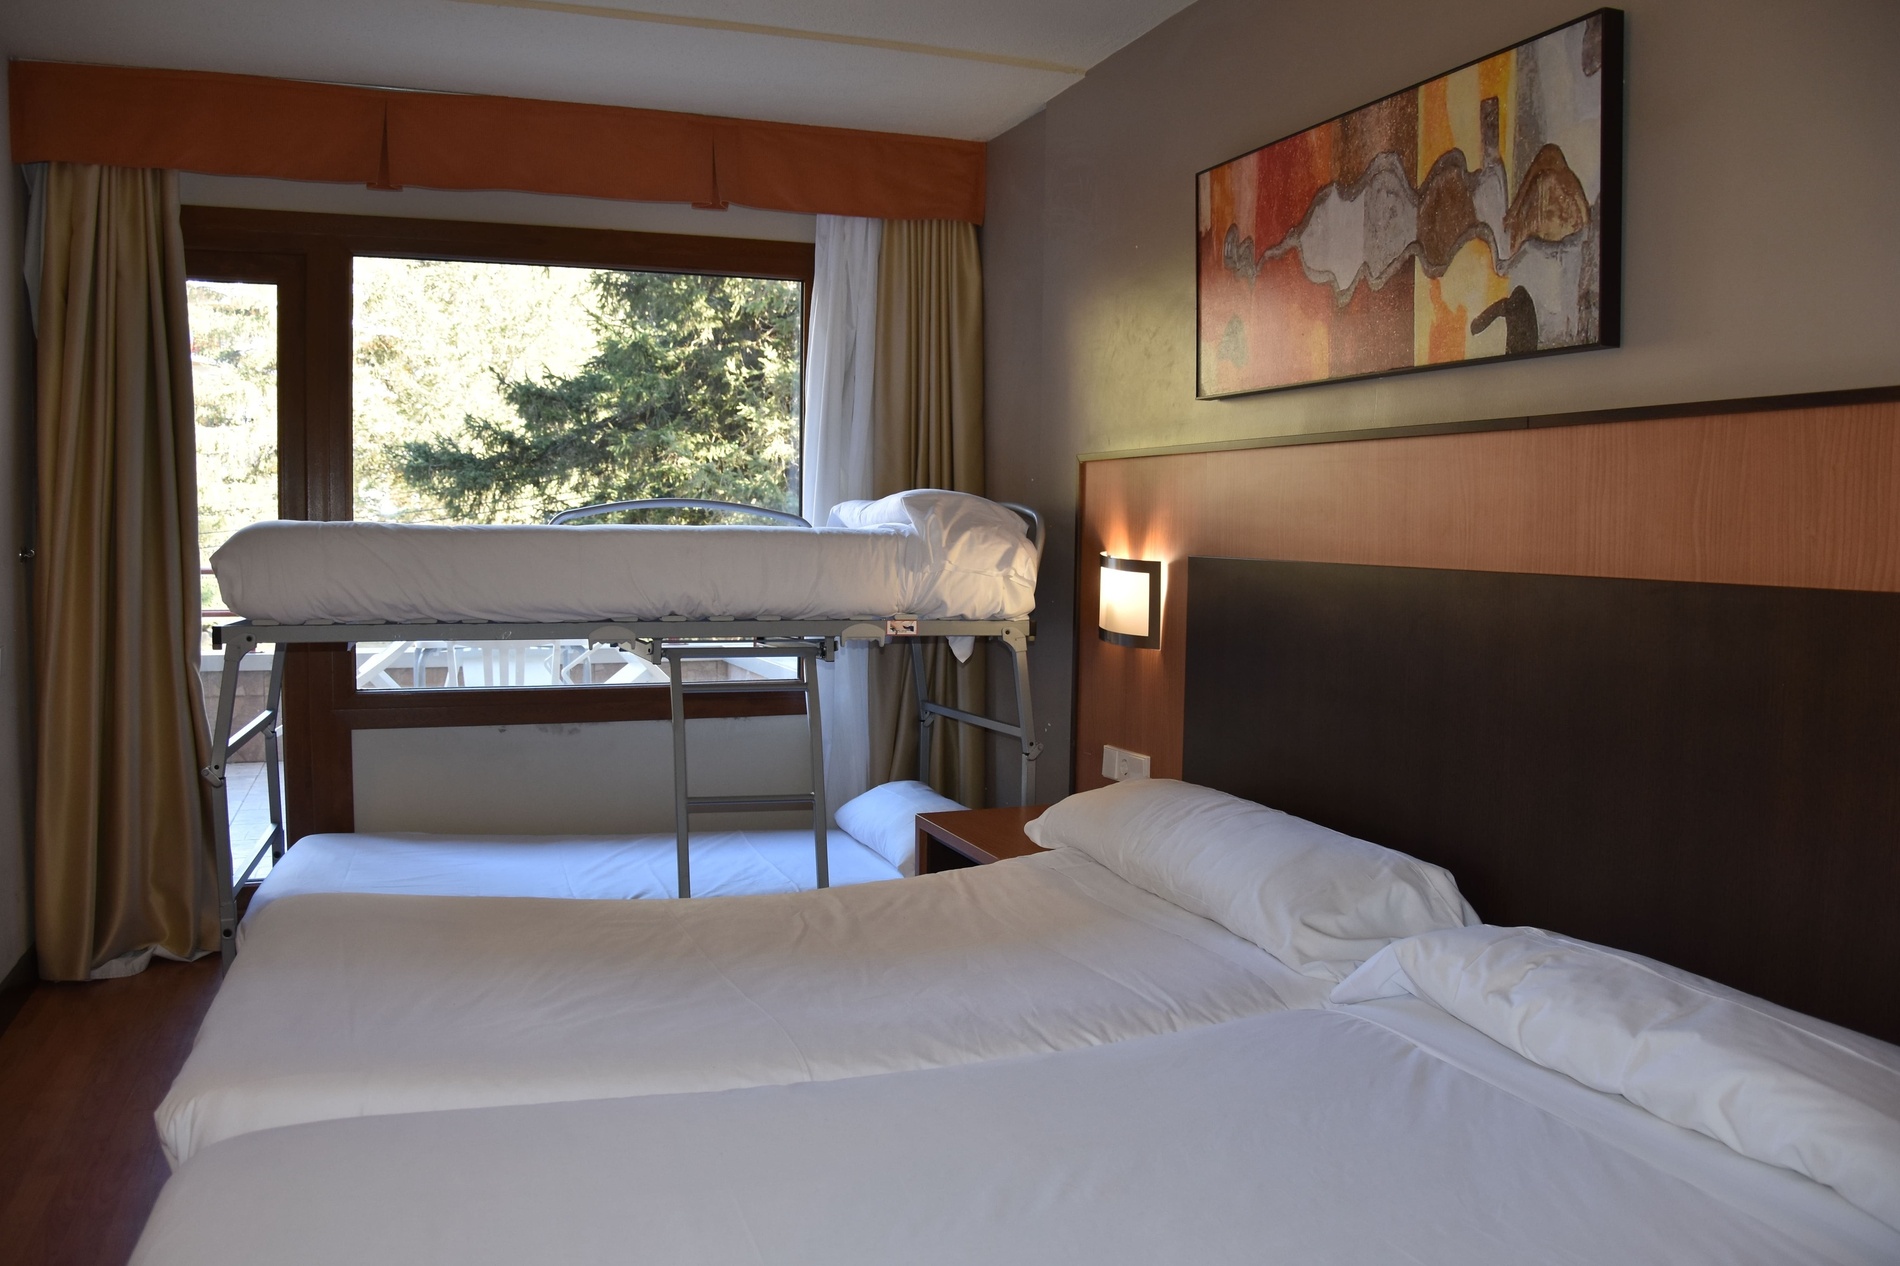 une chambre d' hôtel avec deux lits jumeaux et une peinture sur le mur